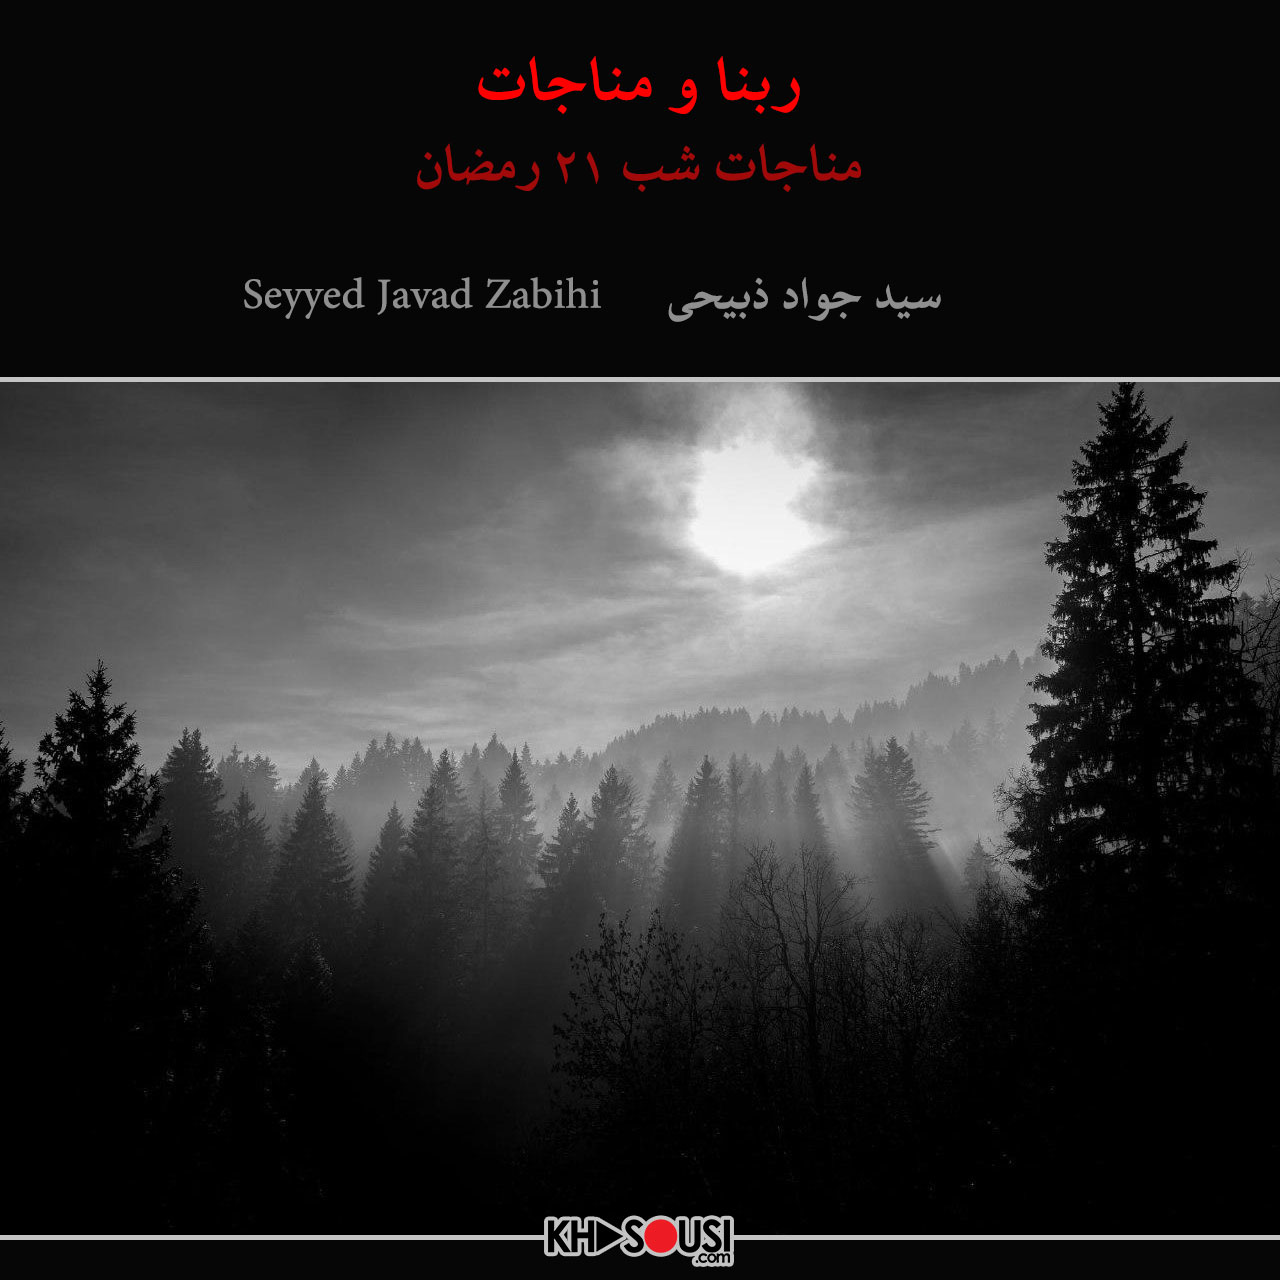 ربنا و مناجات شب ۲۱ رمضان - سید جواد ذبیحی